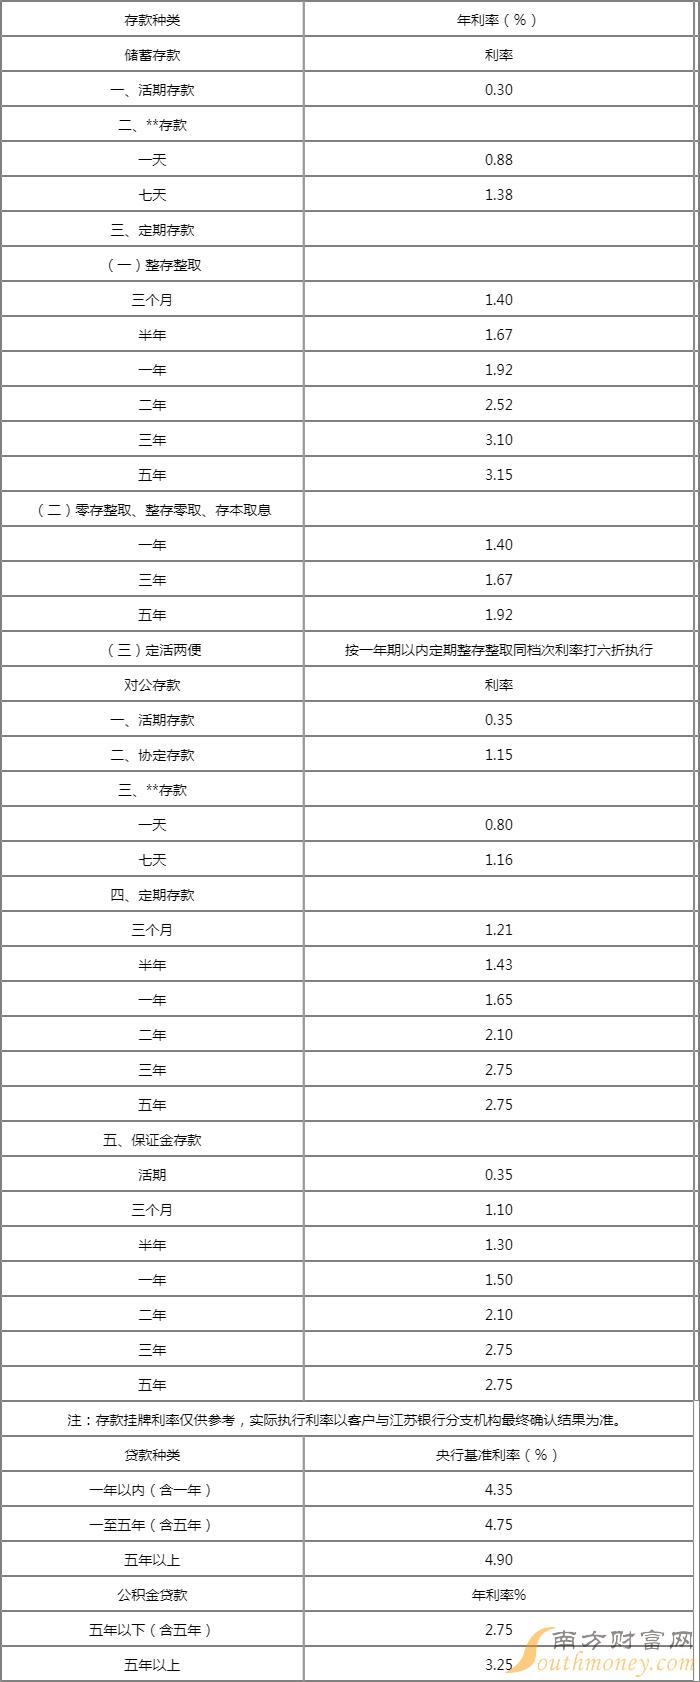 江苏银行人民币存款基准利率调整表2022江苏银行下辖17家分行和苏银